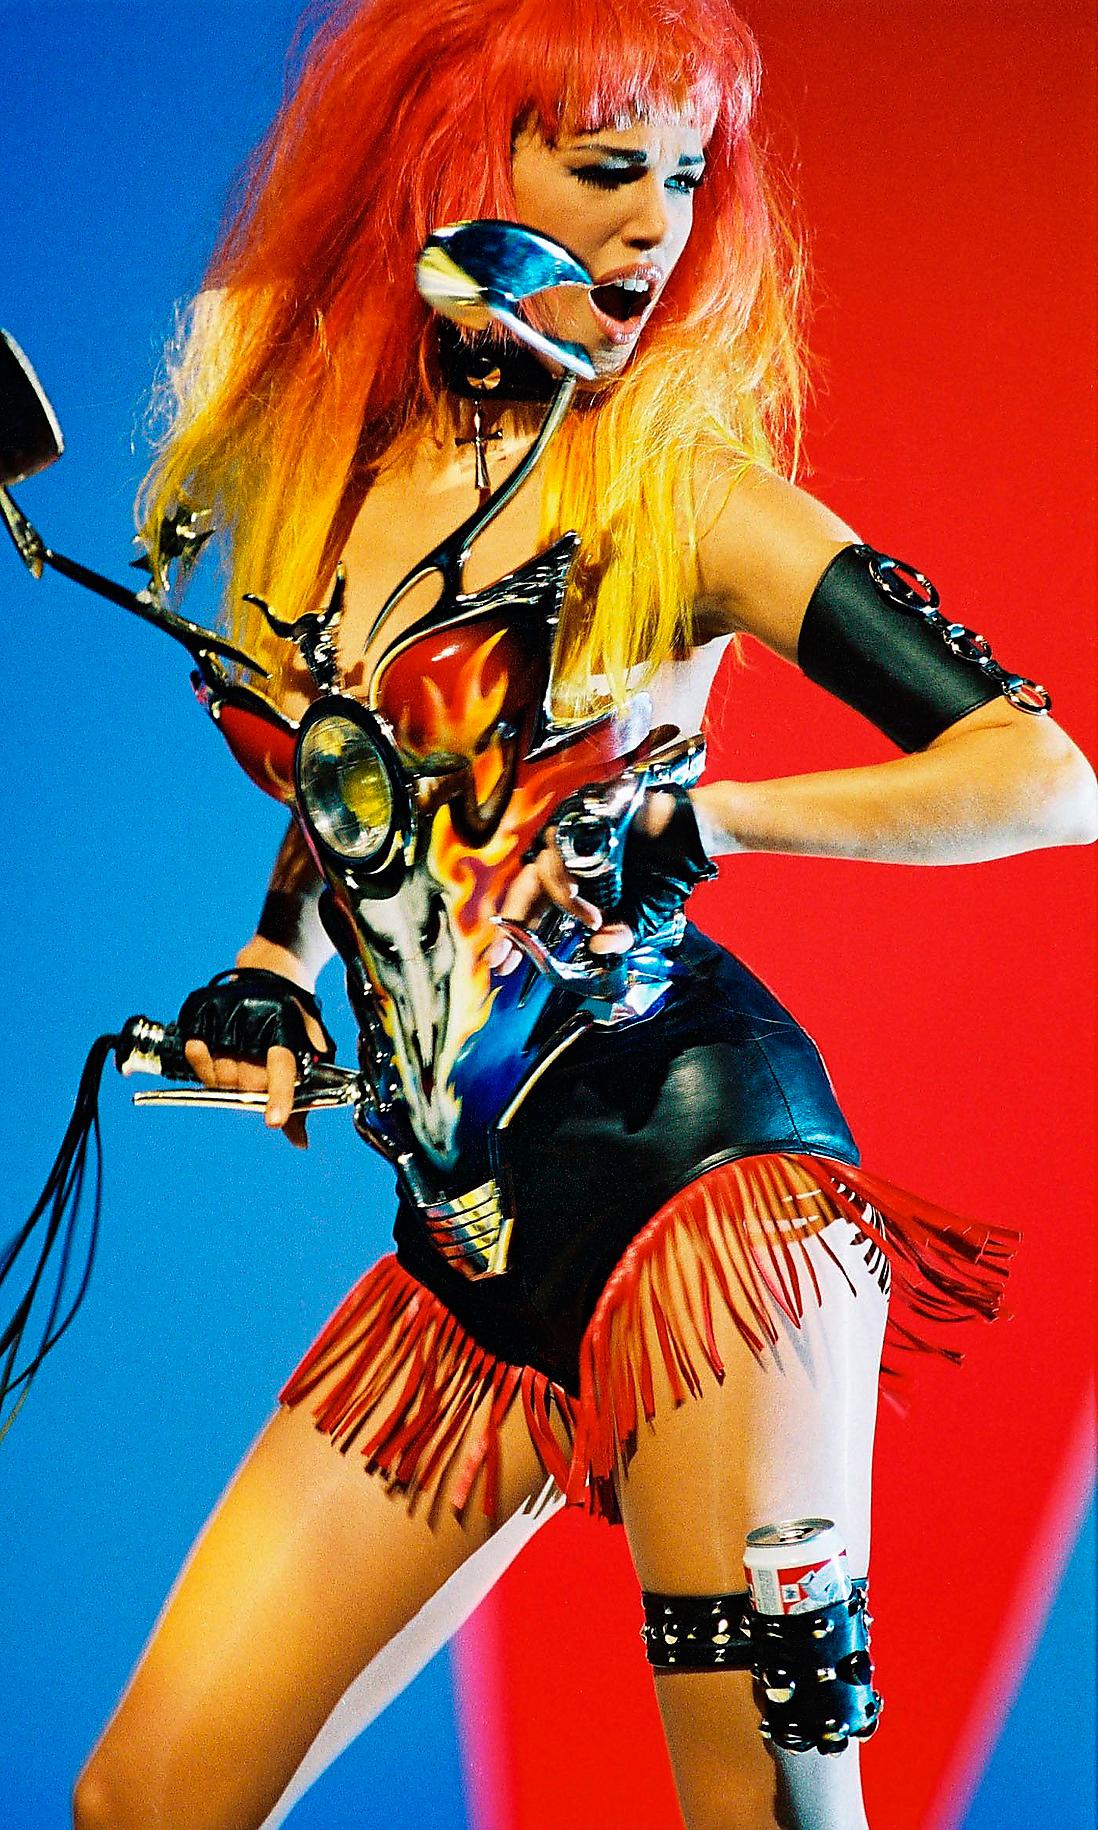 Emma Sjöberg i den klassiska korsettkreationen i George Michaels musikvideo till låten ”Too funky”. Foto: IBL